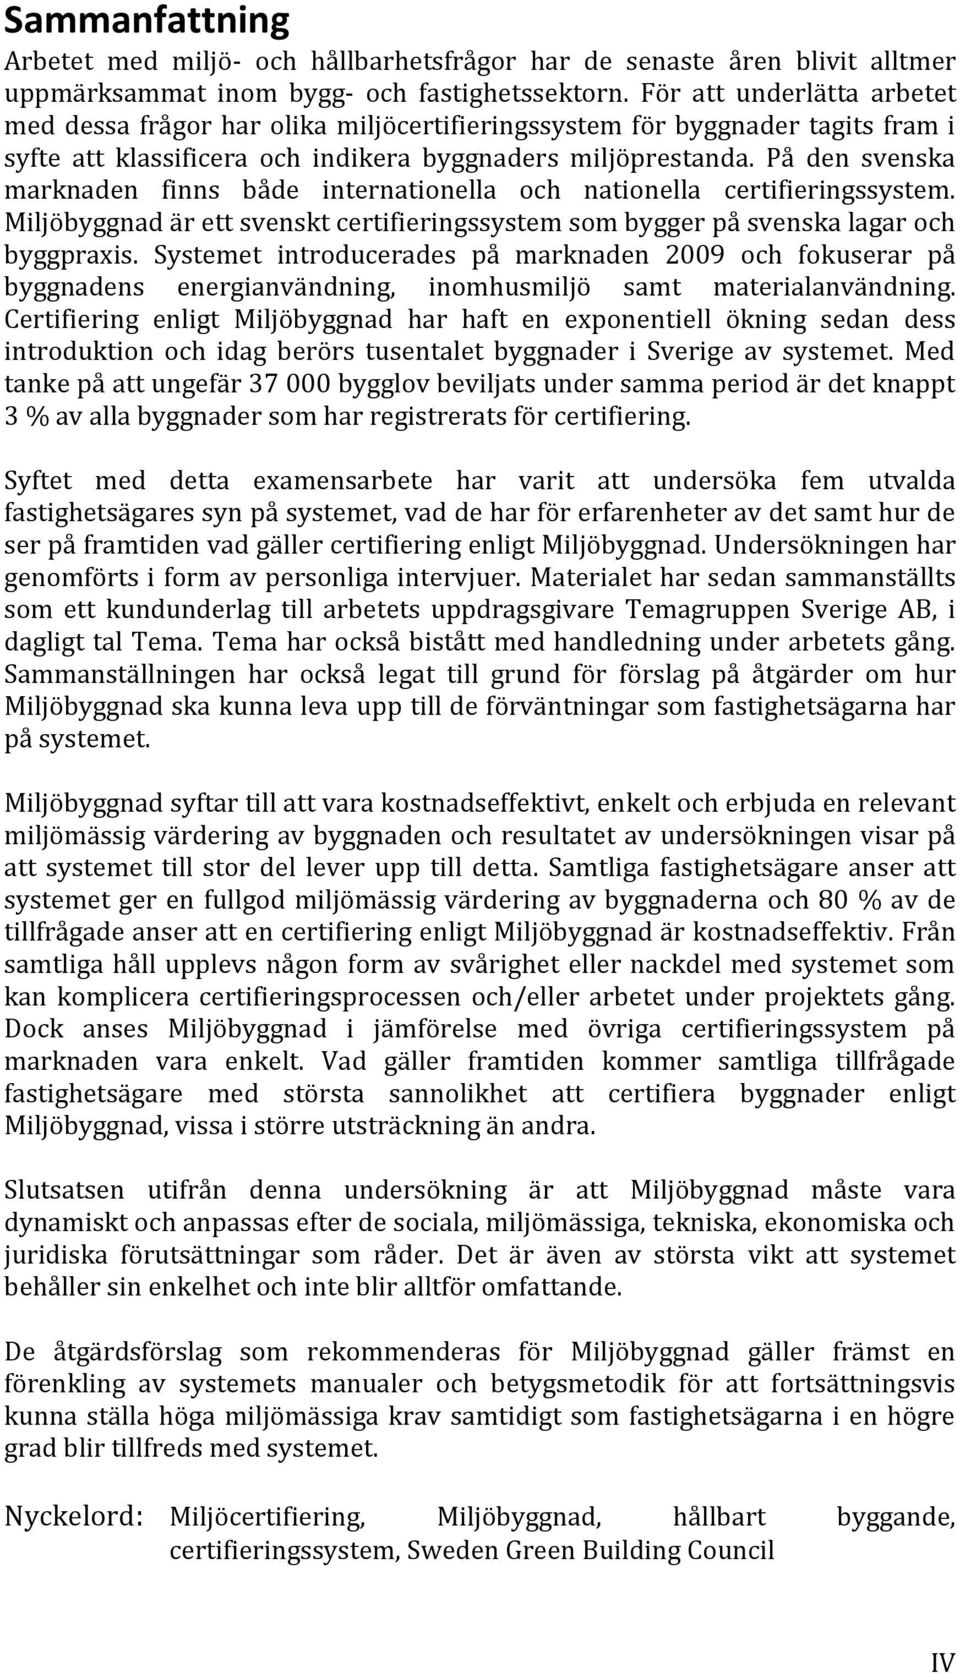 På den svenska marknaden finns både internationella och nationella certifieringssystem. Miljöbyggnad är ett svenskt certifieringssystem som bygger på svenska lagar och byggpraxis.